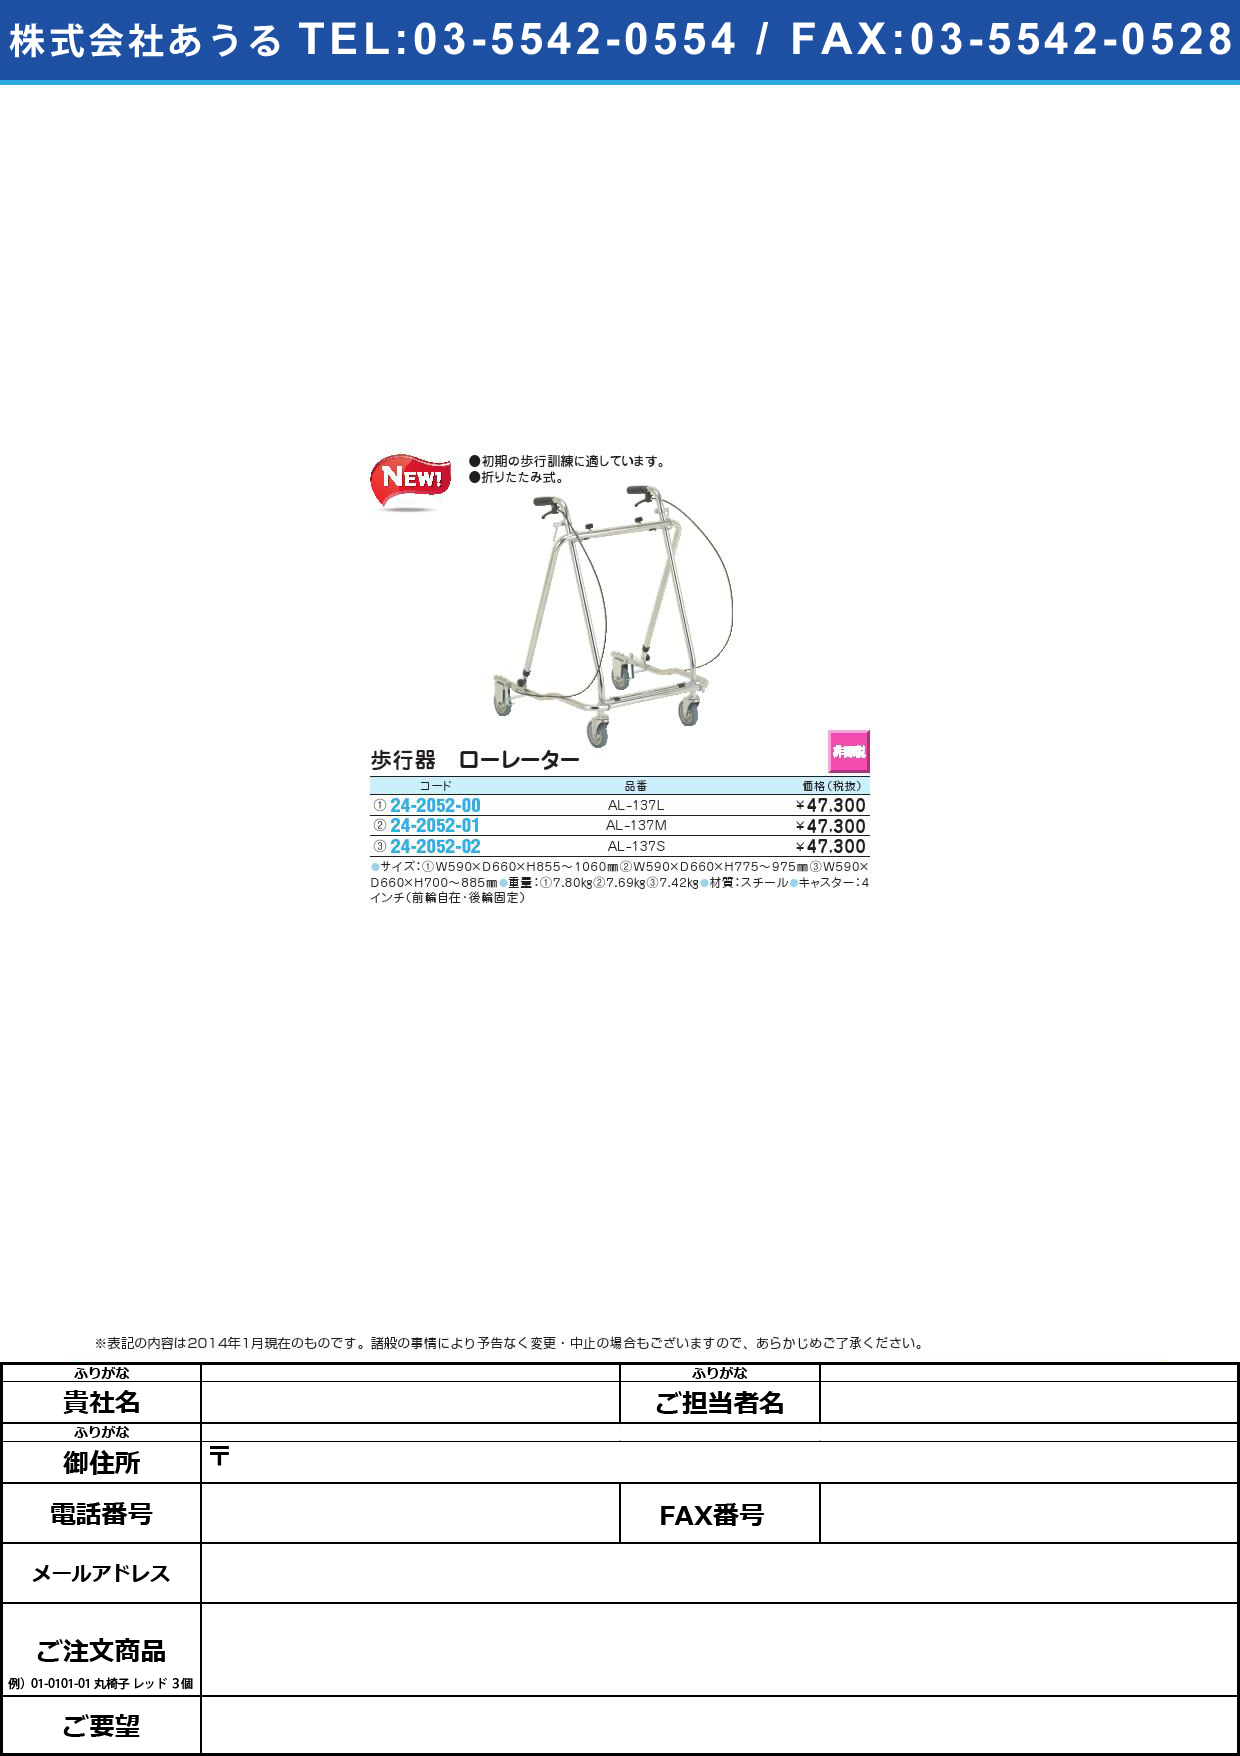 (24-2052-01)歩行器 ローレーター ﾎｺｳｷﾛｰﾚｰﾀｰ(24-2052-01)AL-137M【1台単位】【2014年カタログ商品】